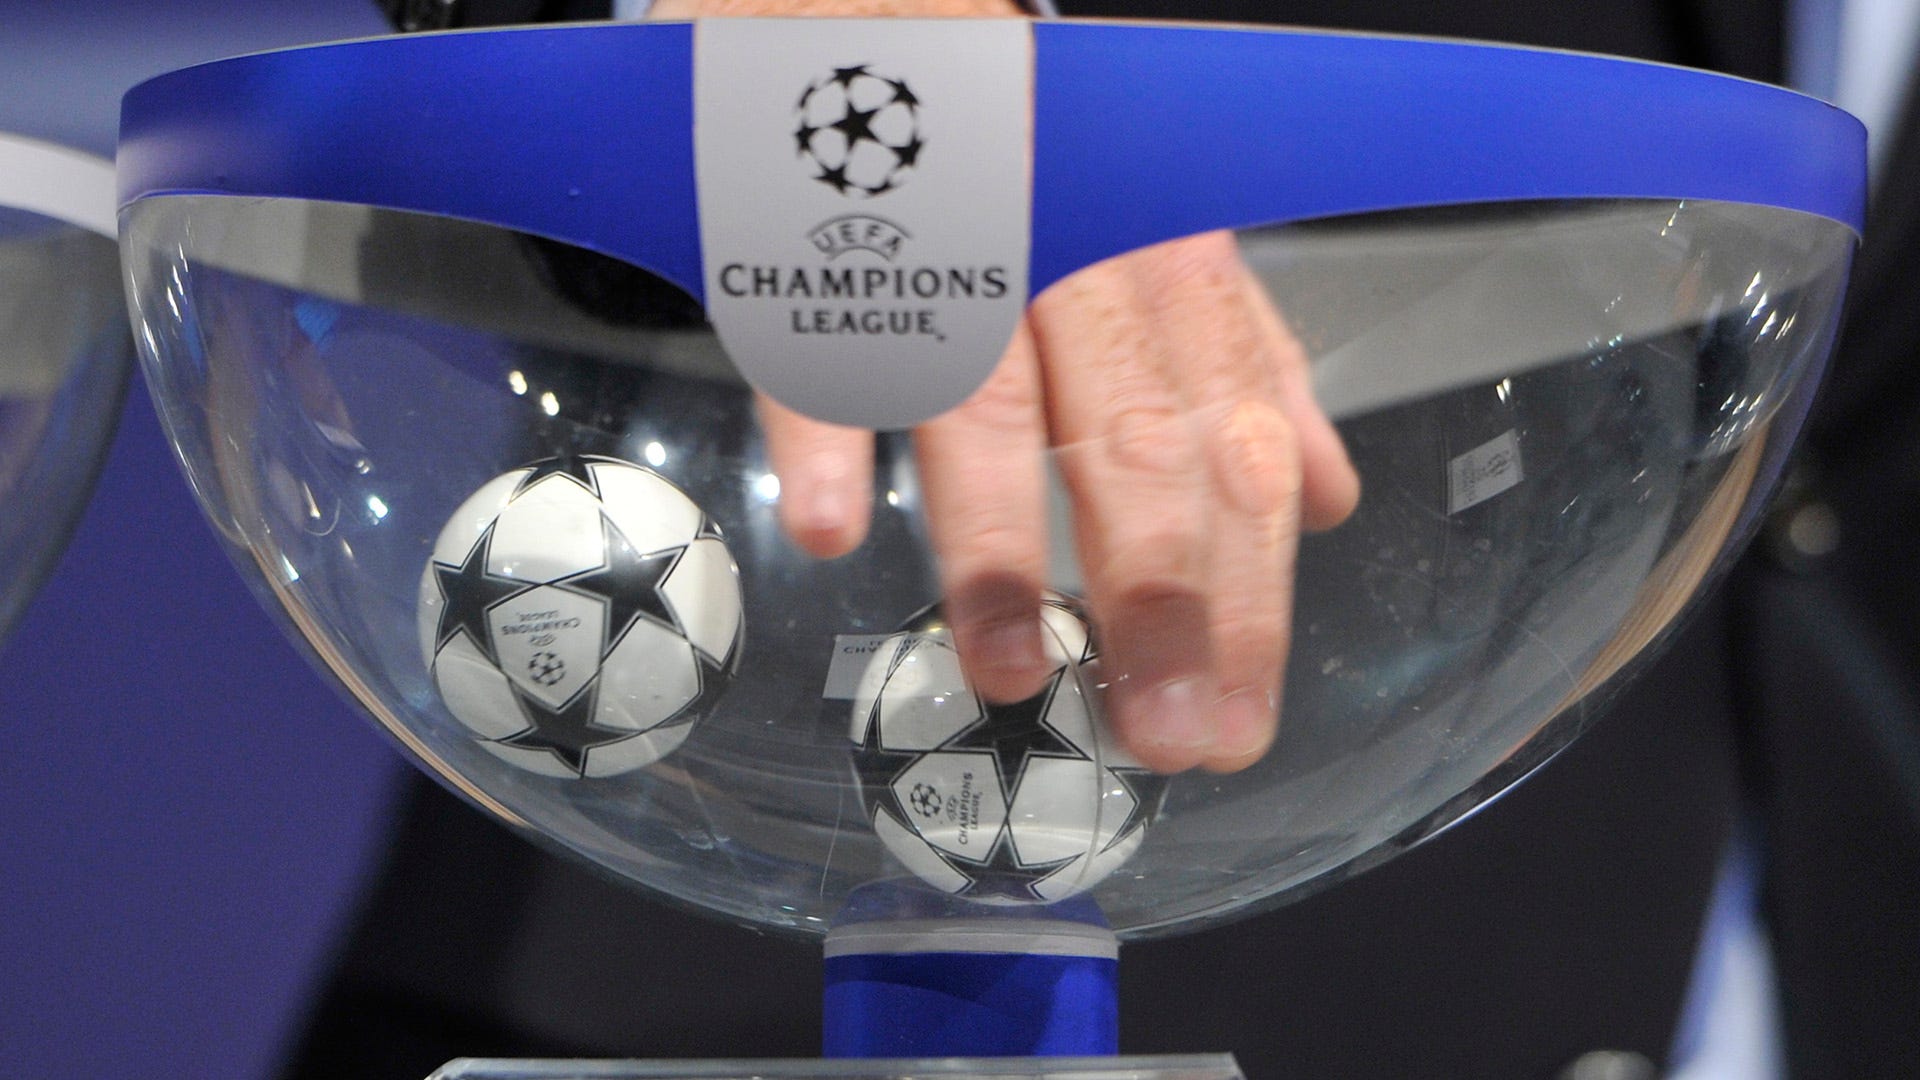 Champions League, Auslosung heute live im TV und LIVE-STREAM sehen Goal Deutschland